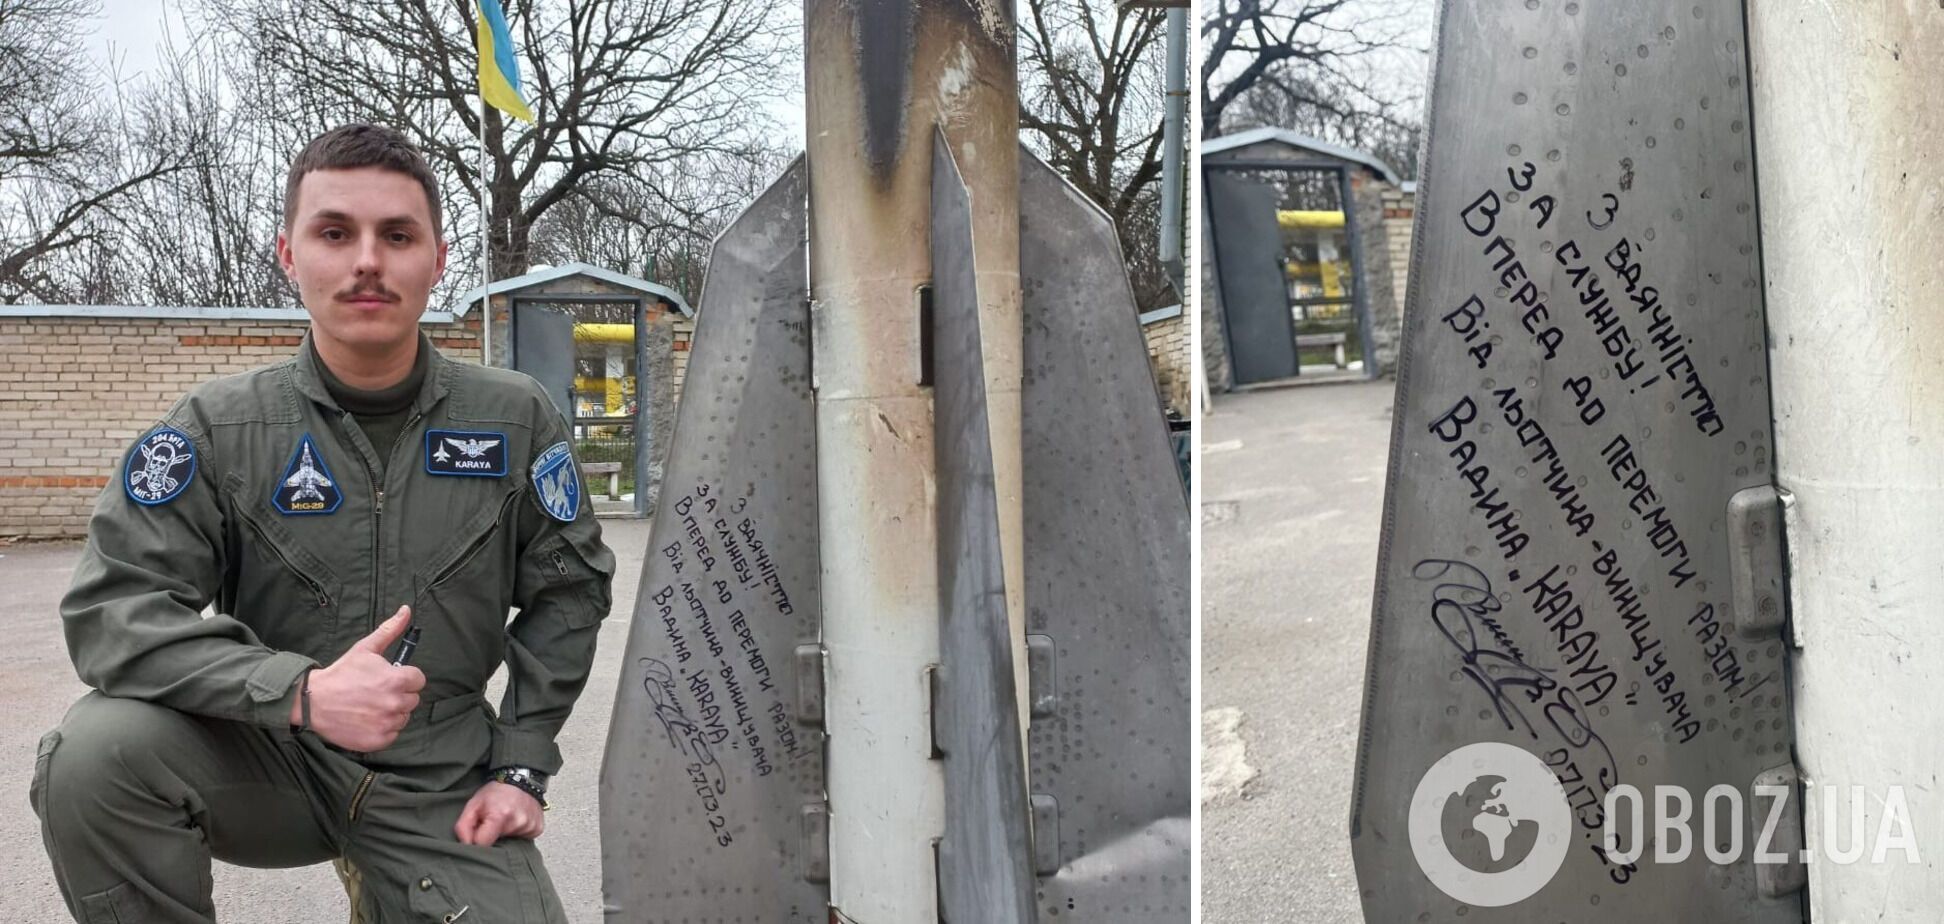 Вадим Ворошилов 'Карая' оставил автограф на своей ракете